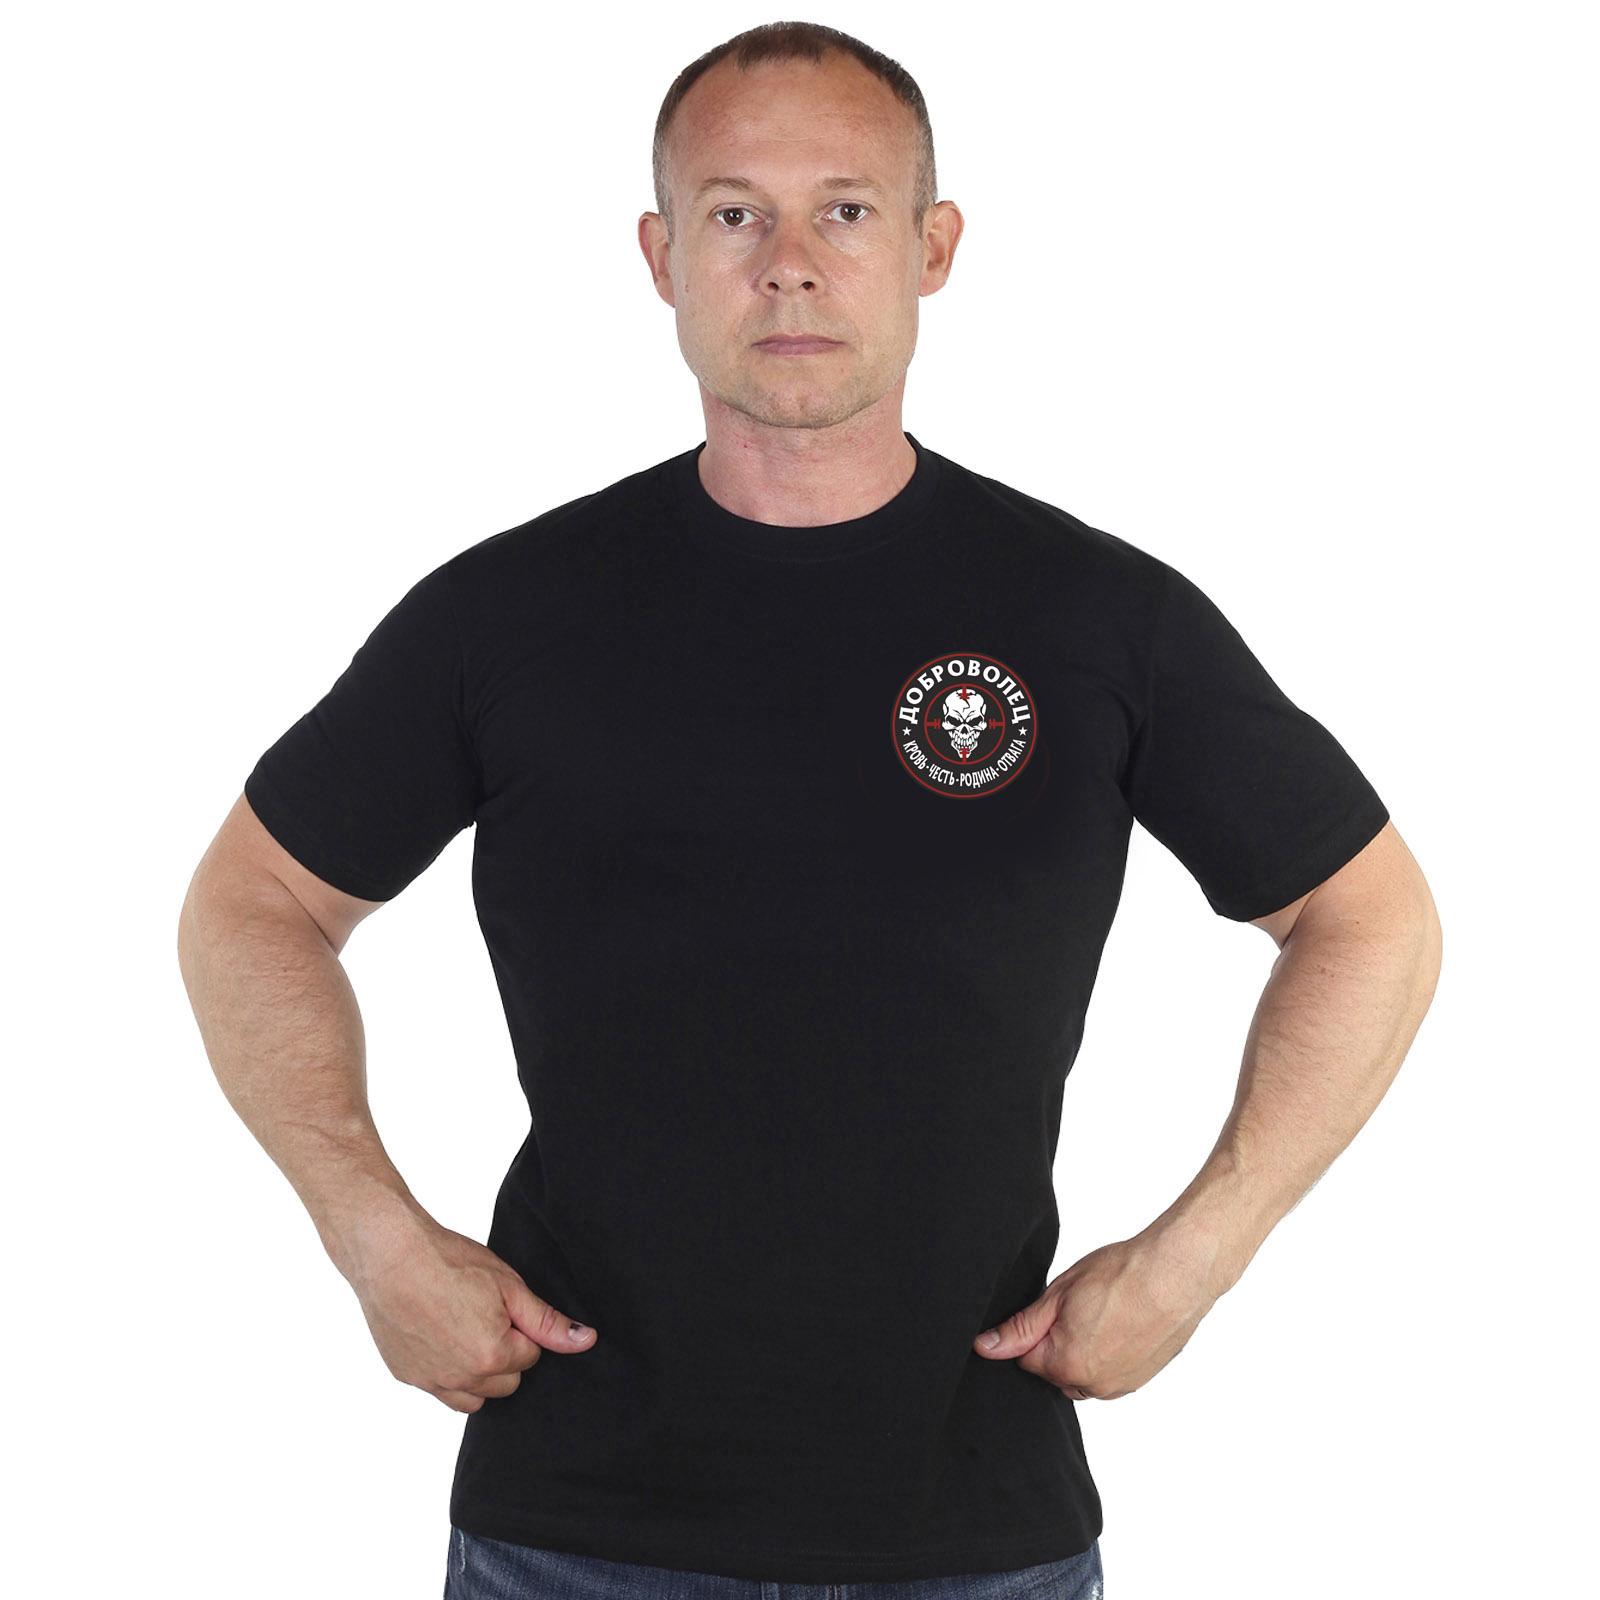 Купить хлопковую мужскую футболку с термоаппликацией Доброволец с доставкой